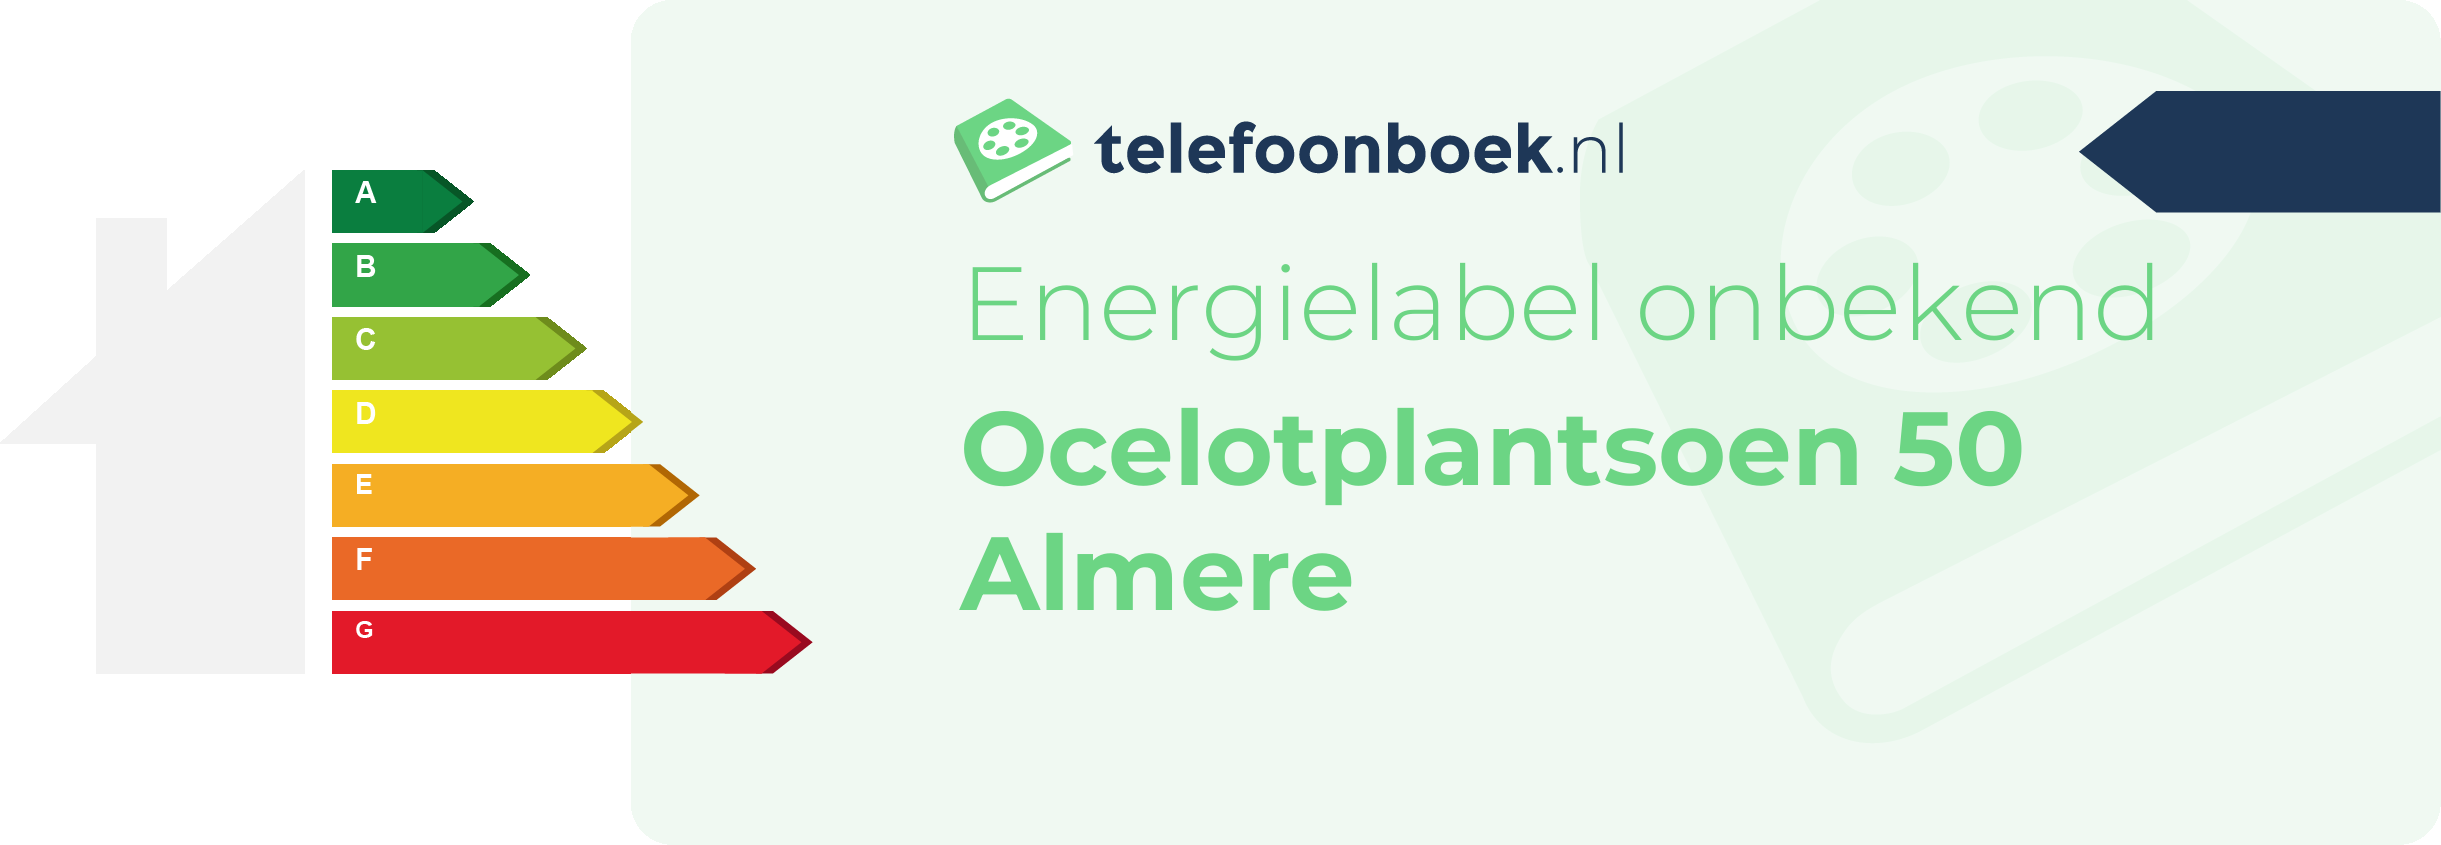 Energielabel Ocelotplantsoen 50 Almere